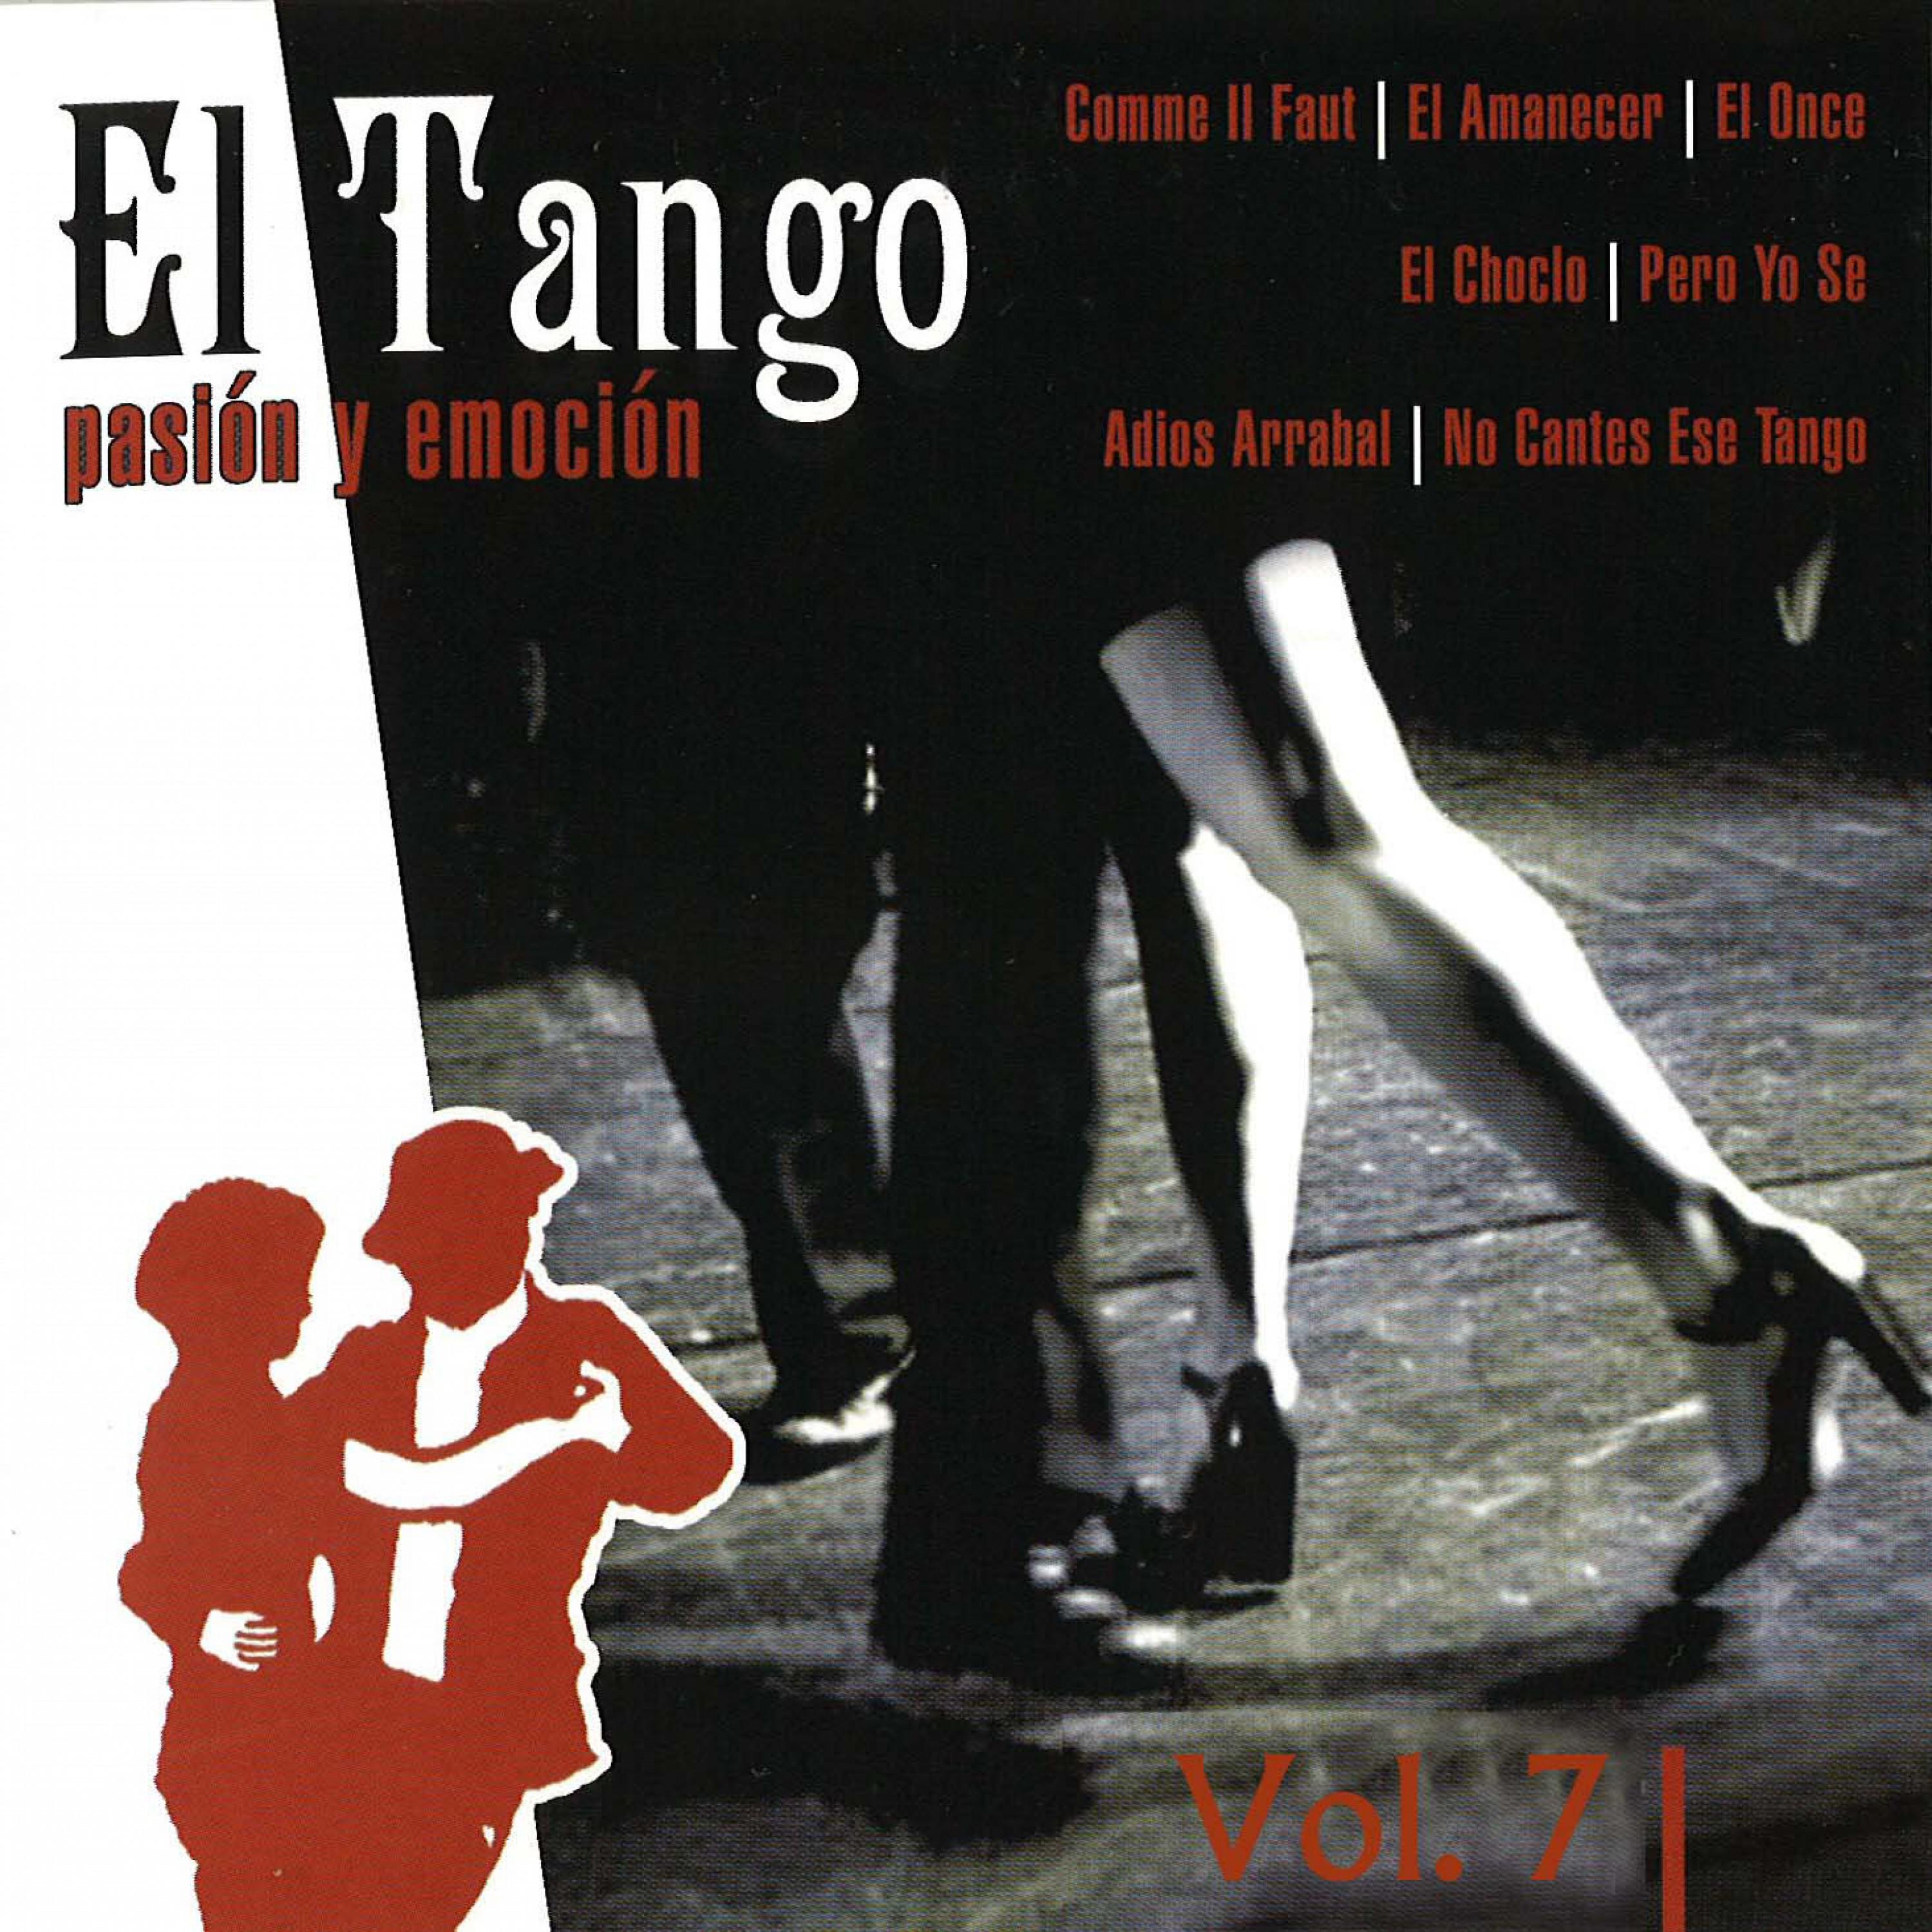 El Tango Vol. 7